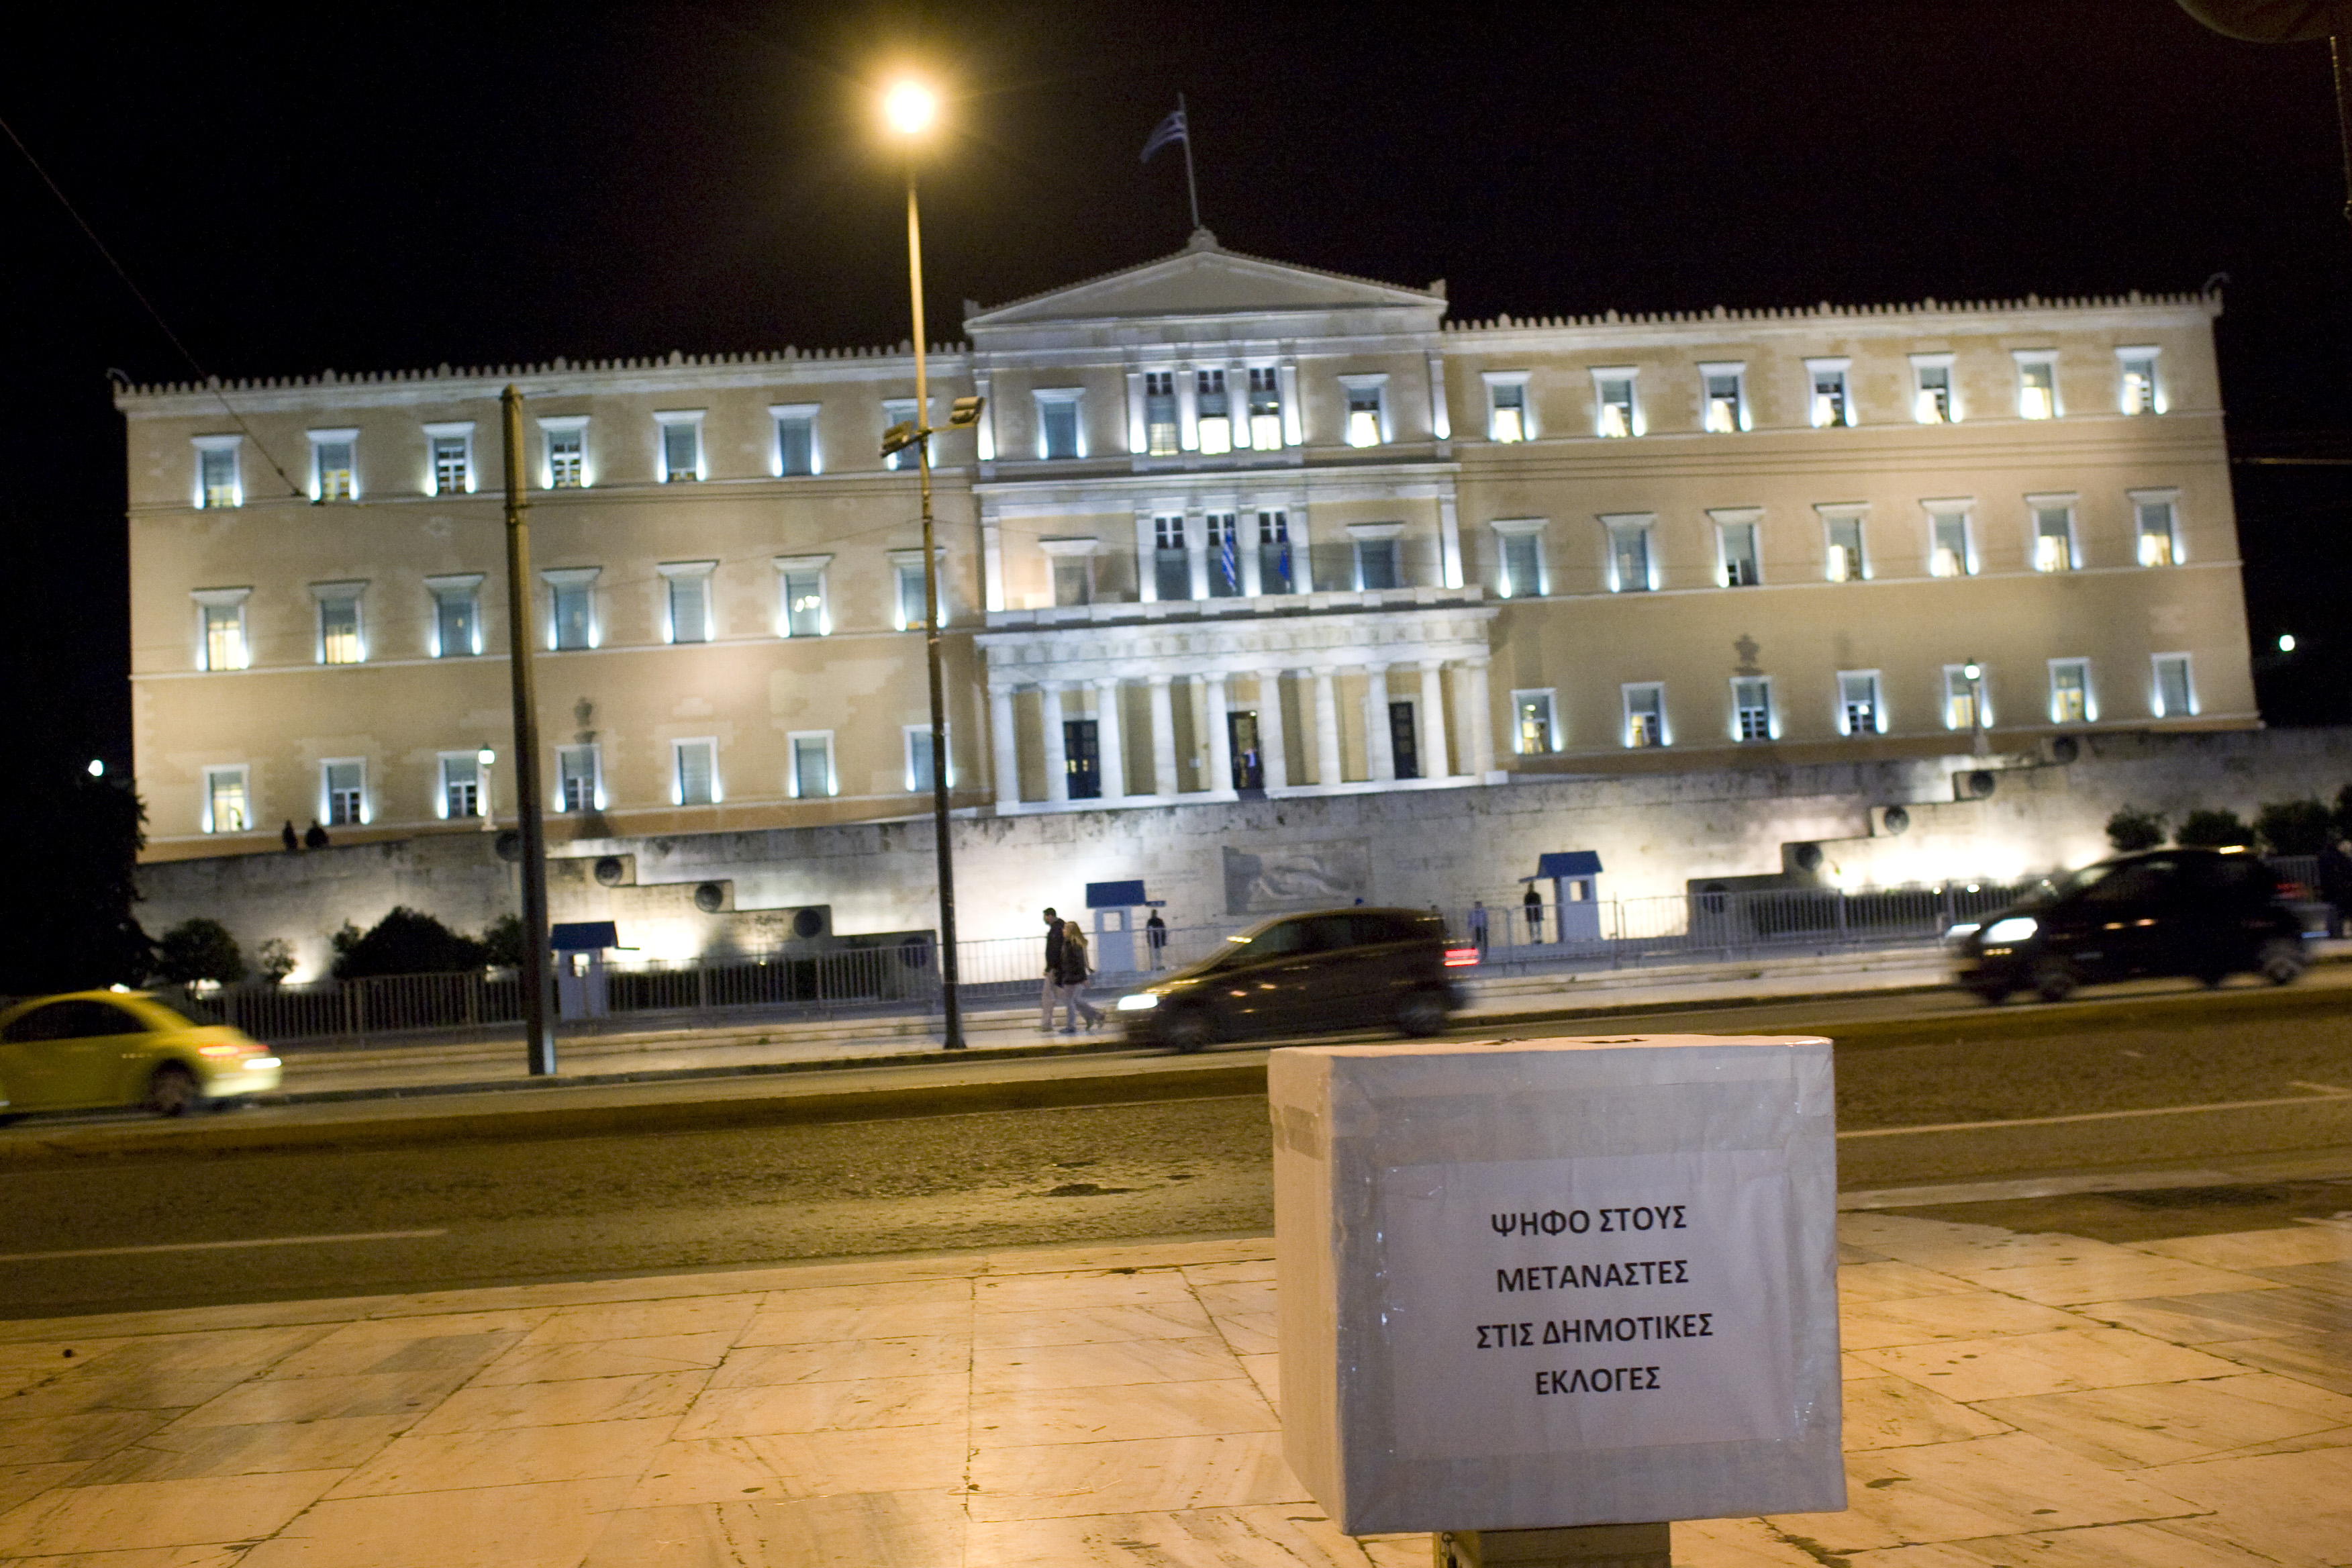 Time: Οι τρεις λόγοι που δεν πρέπει να ασχοληθούμε με τις ελληνικές εκλογές